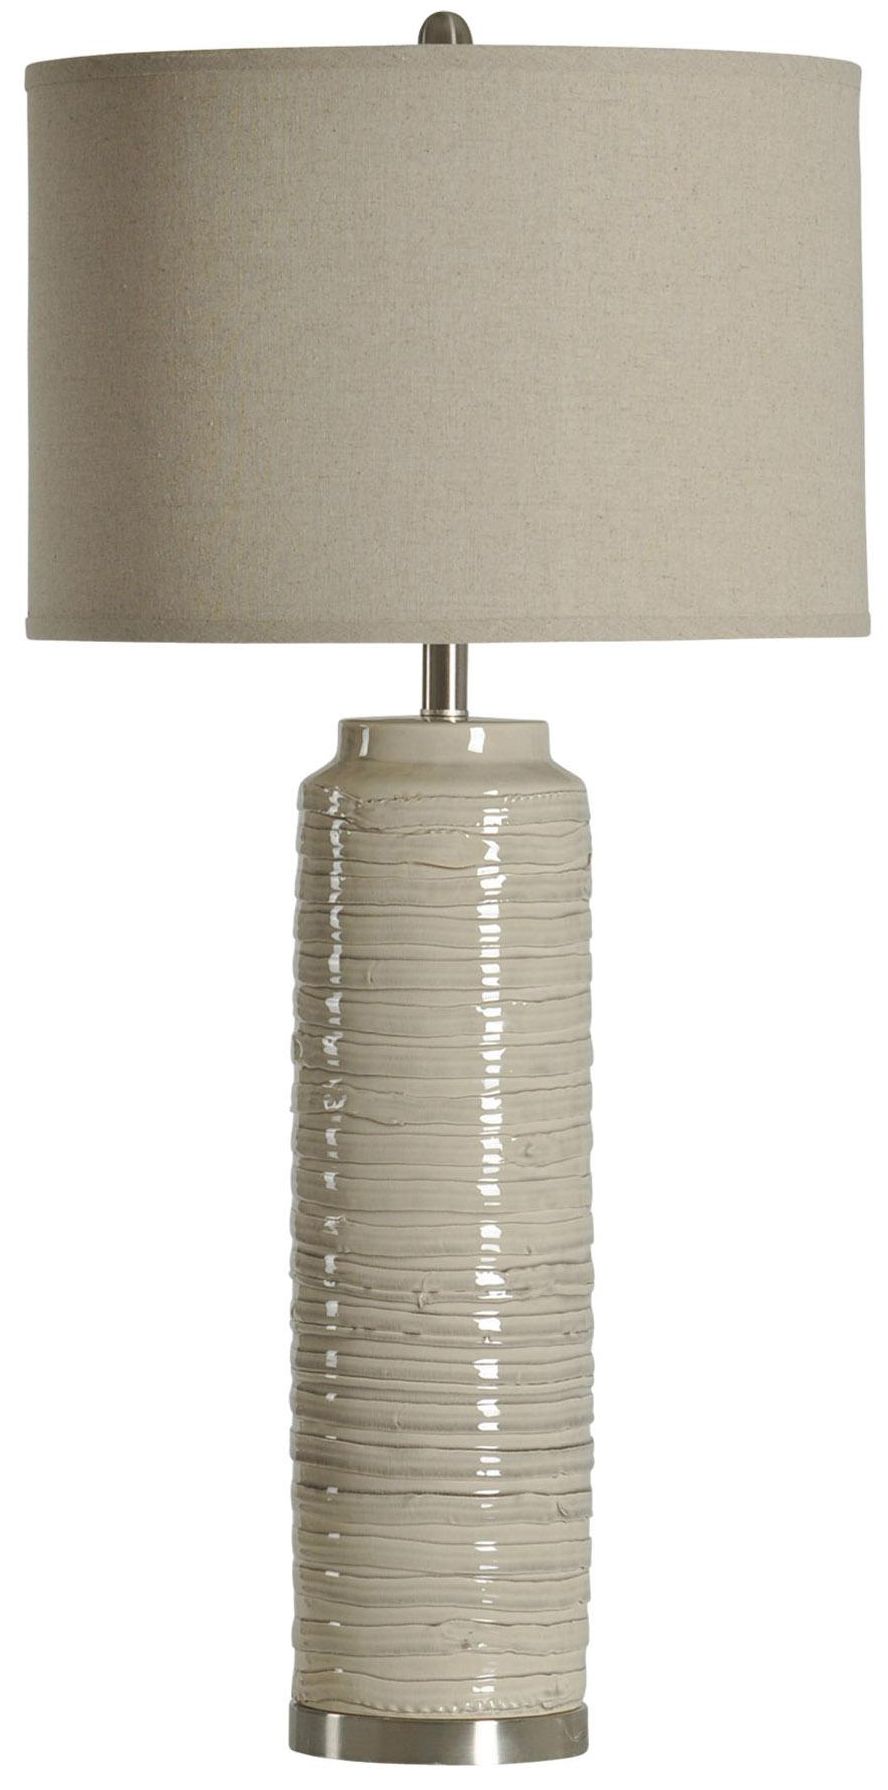 StyleCraft Tall Table Lamp